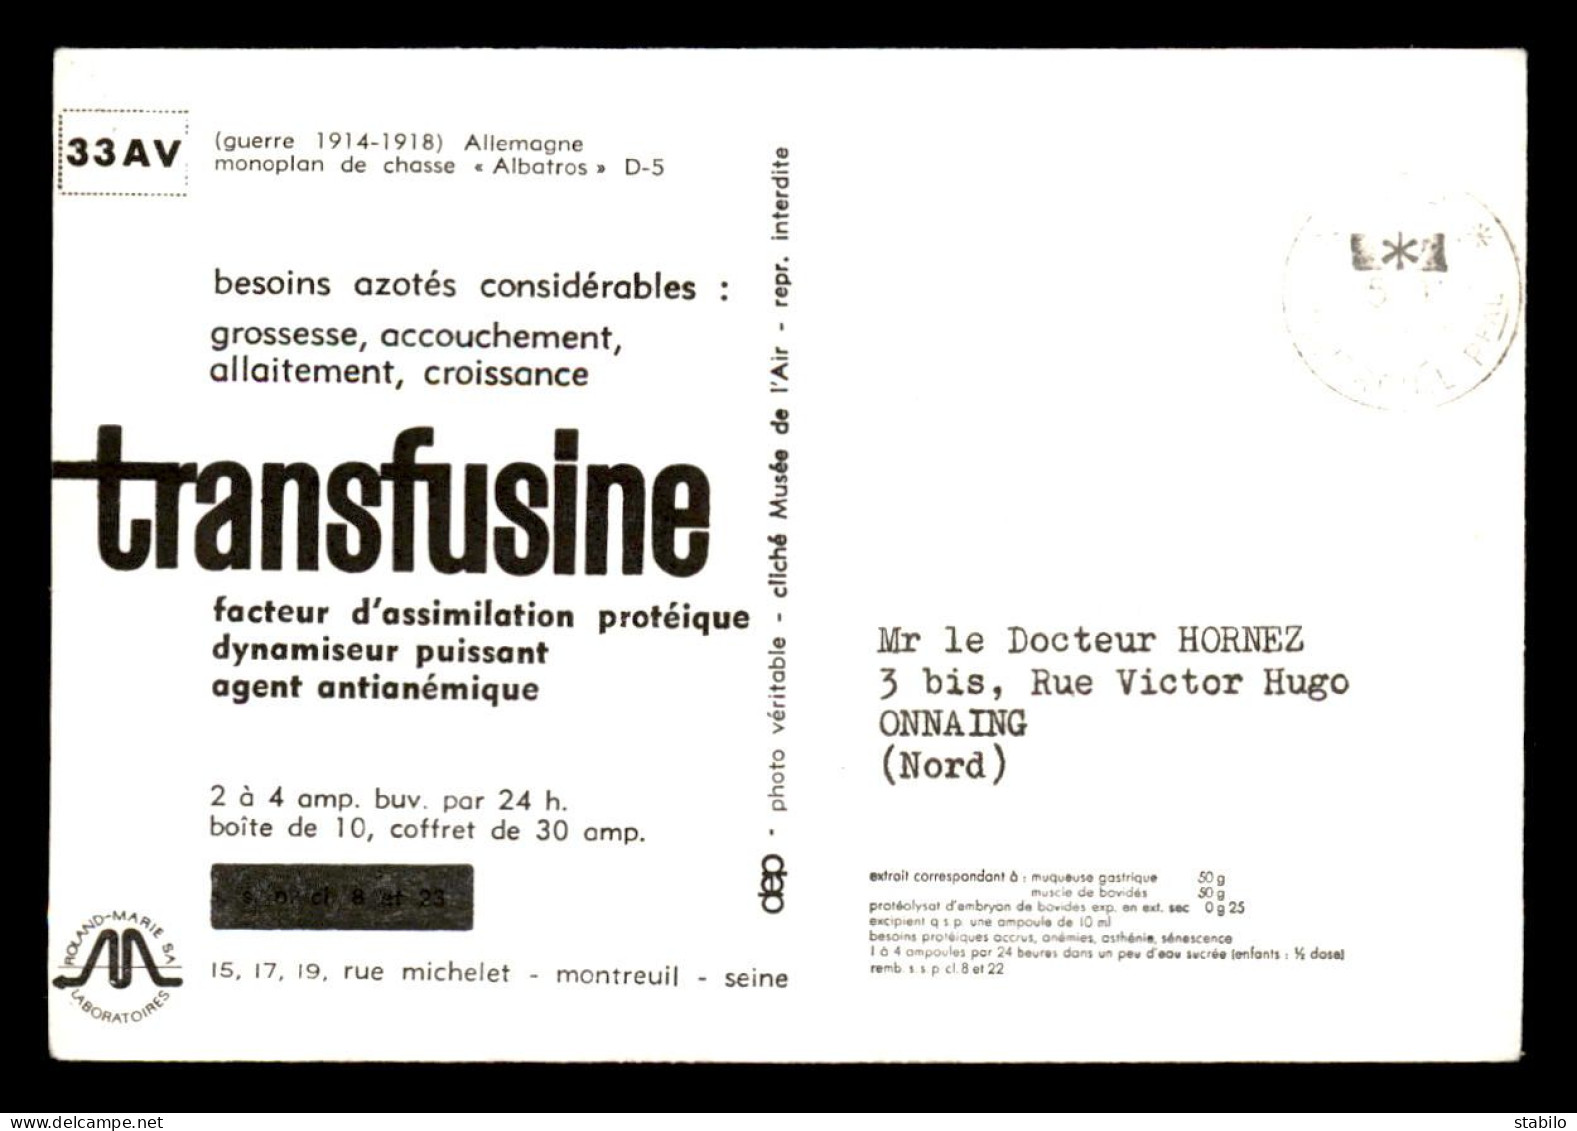 AVIATION - MONOPLAN DE CHASSE ALBATROS D-S - GUERRE14/18 - CARTE MODERNE PUBLICITE TRANSFUSINE - 1946-....: Moderne